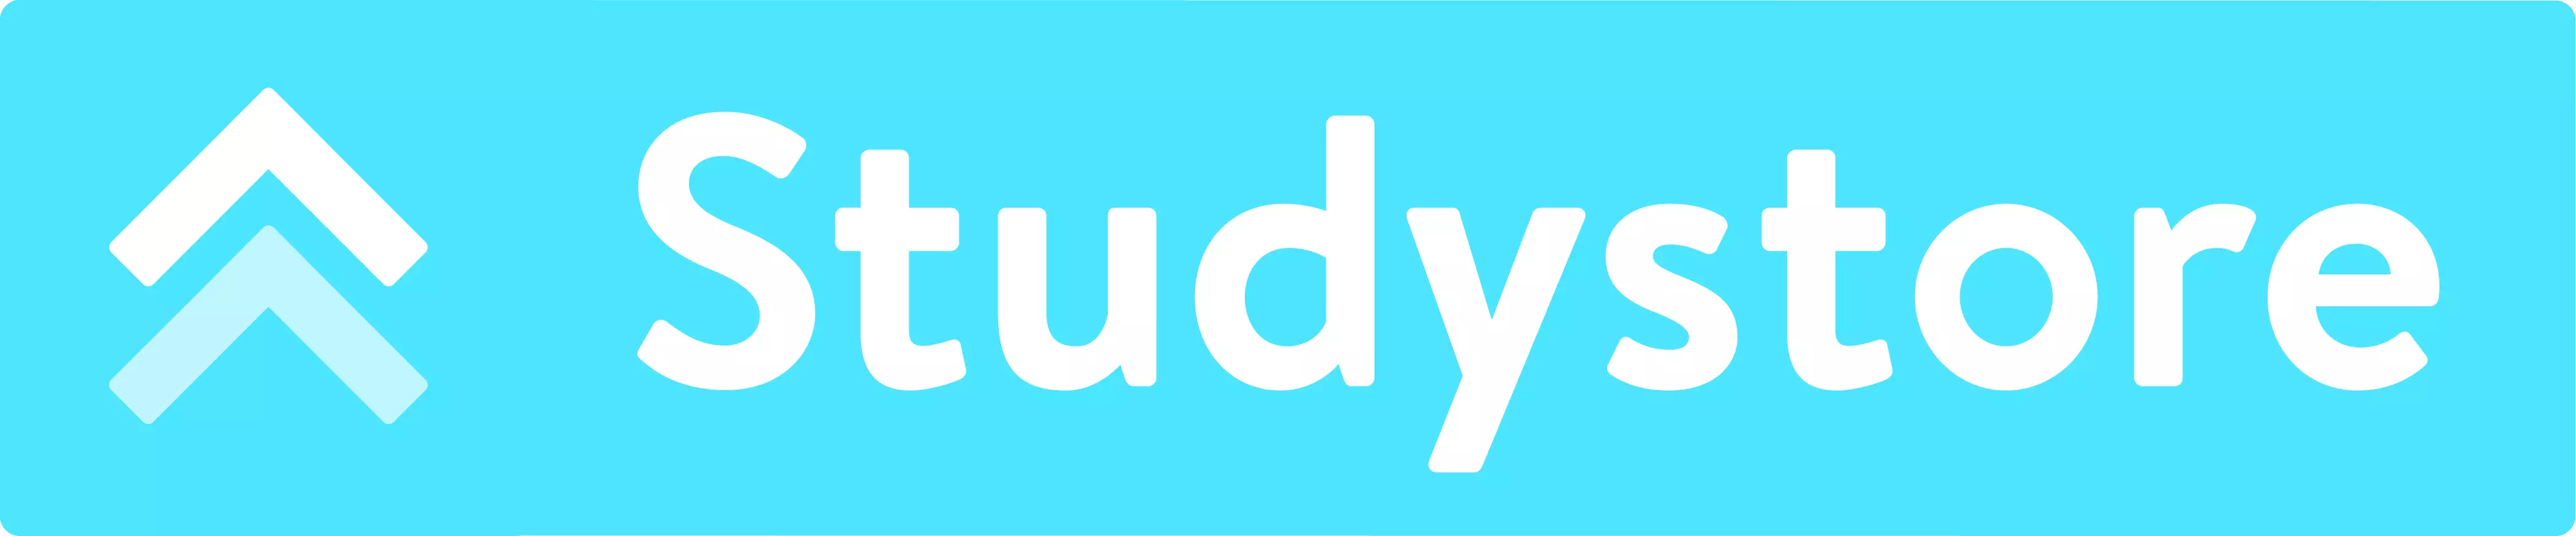 Studiehulp bij SlimAcademy - Logo Studystore